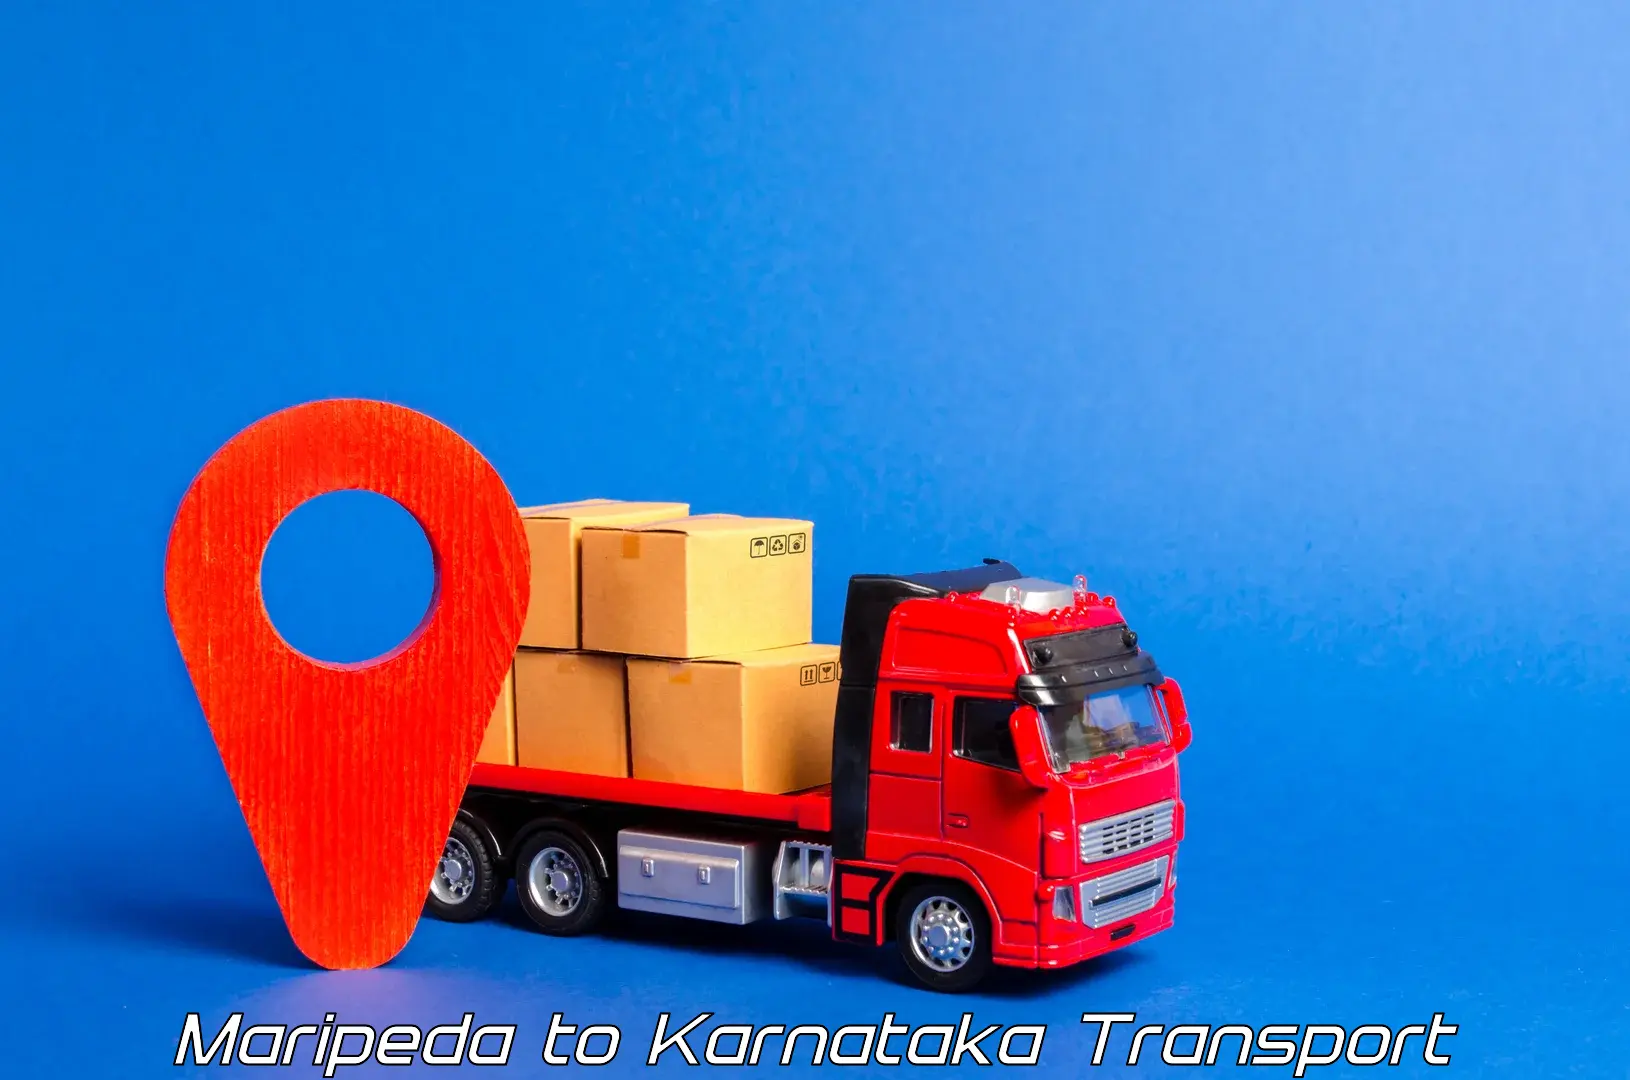 Sending bike to another city Maripeda to Karnataka